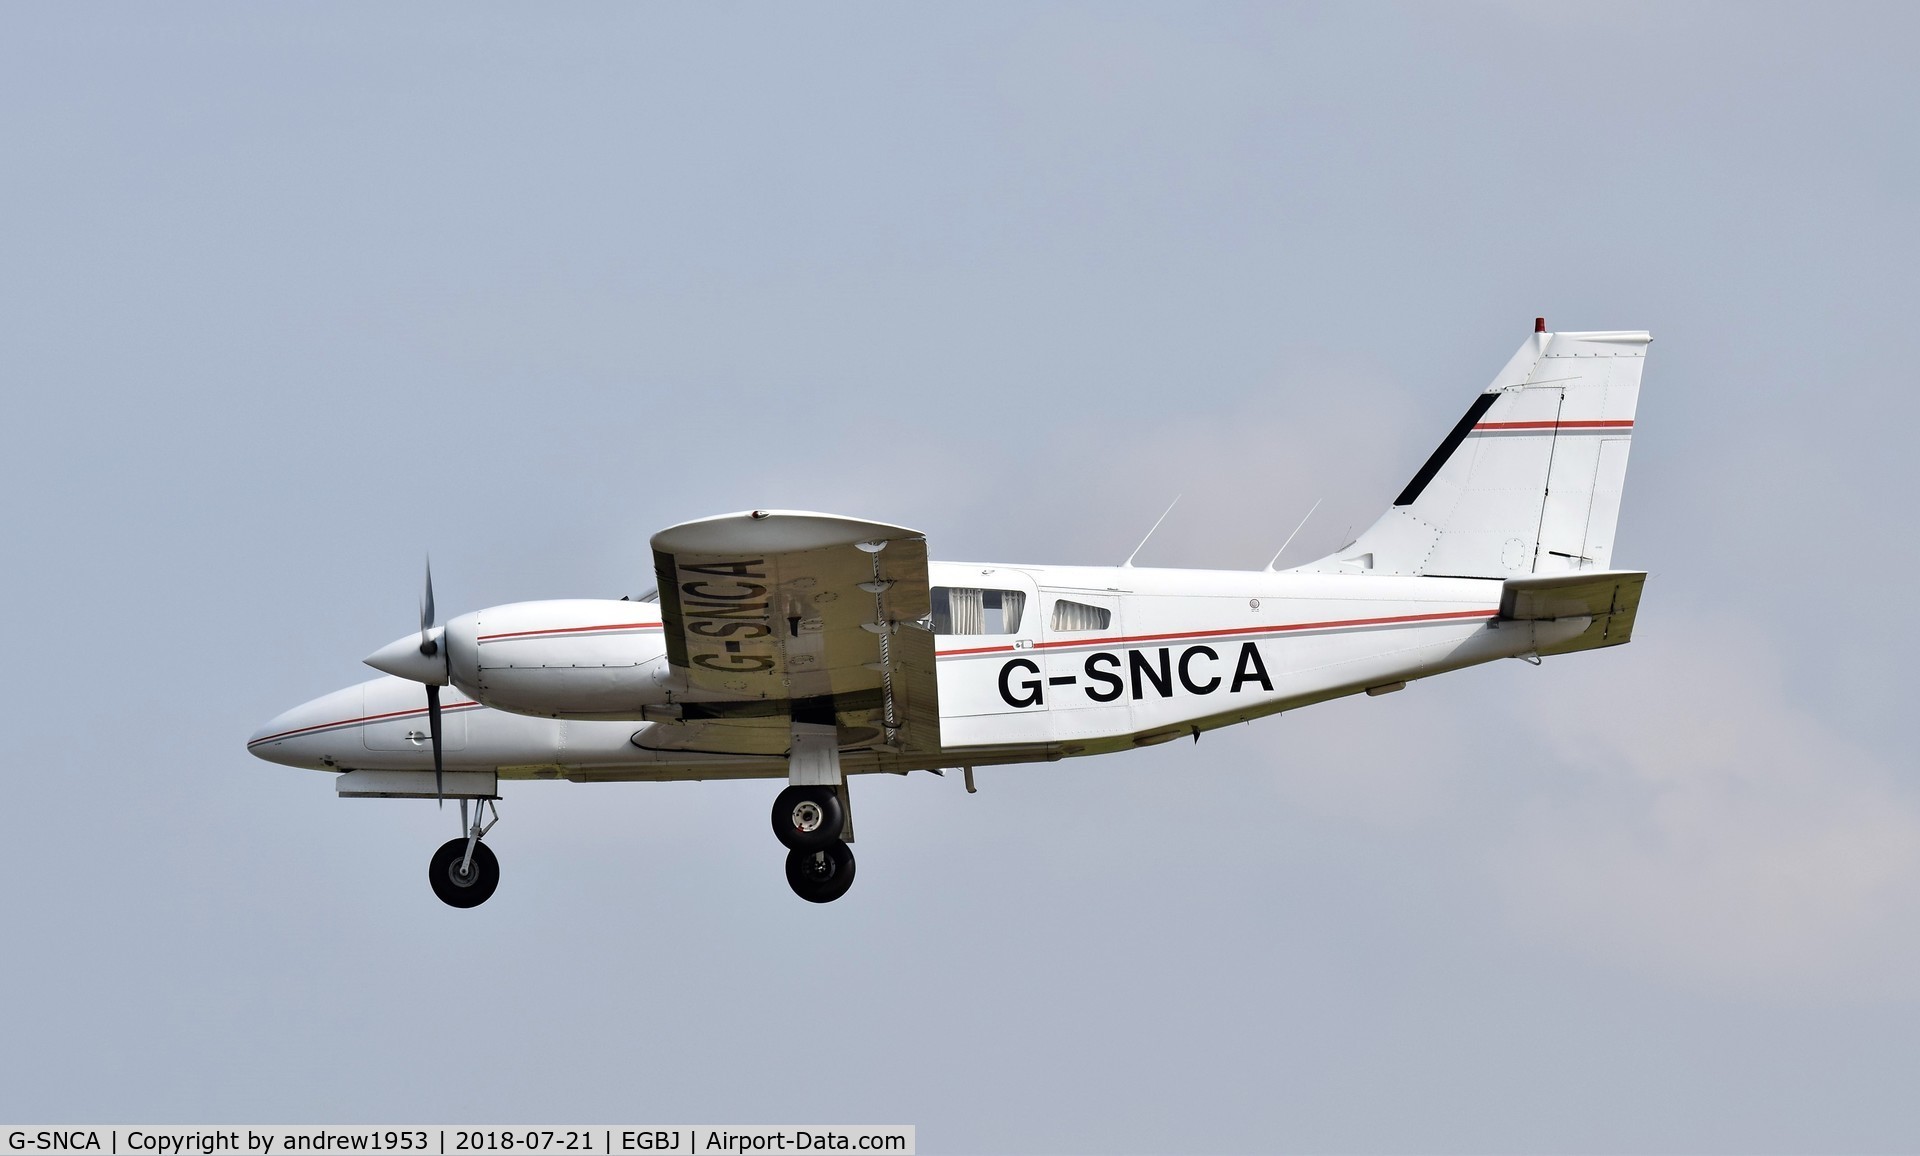 G-SNCA, 1979 Piper PA-34-200T Seneca II C/N 34-7970355, G-SNCA at Gloucestershire Airport.